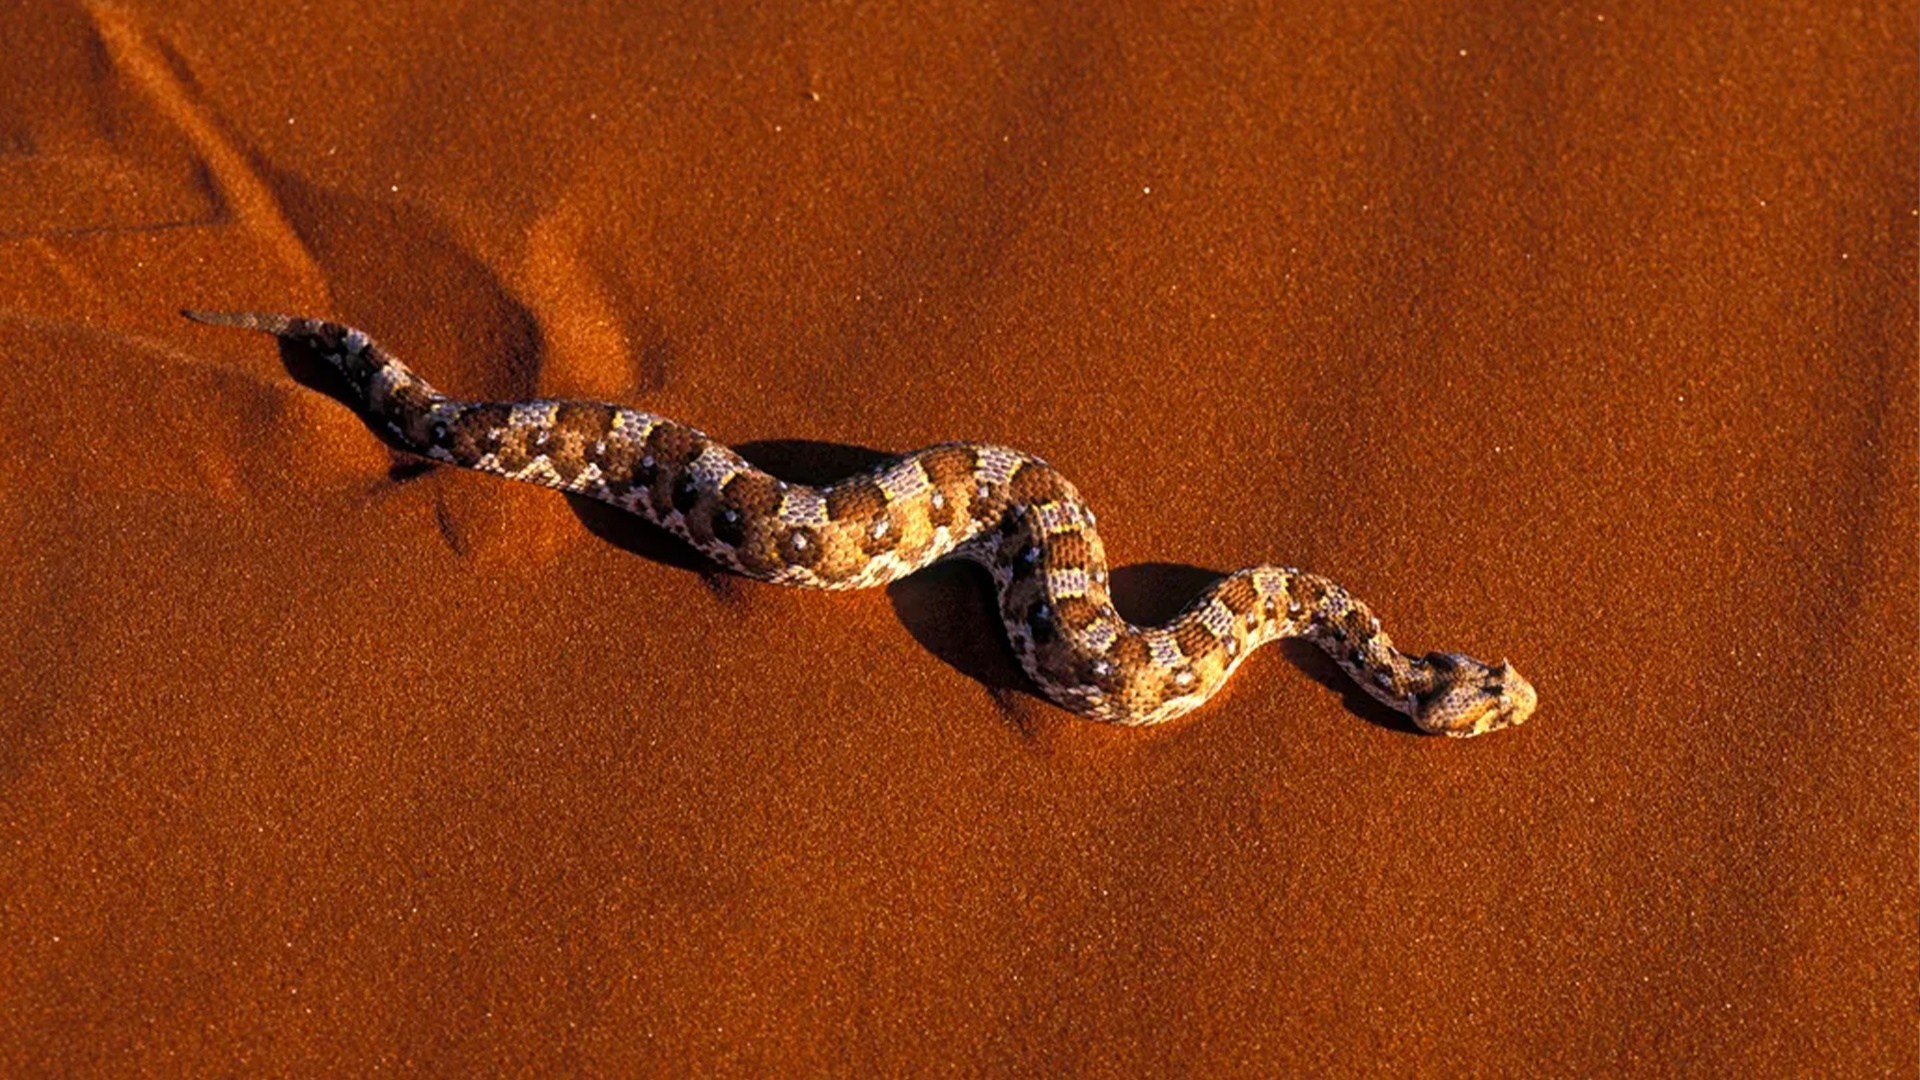 (Meraviglioso da riconoscere: Il dimenarsi del serpente. (Immagine: BBC))